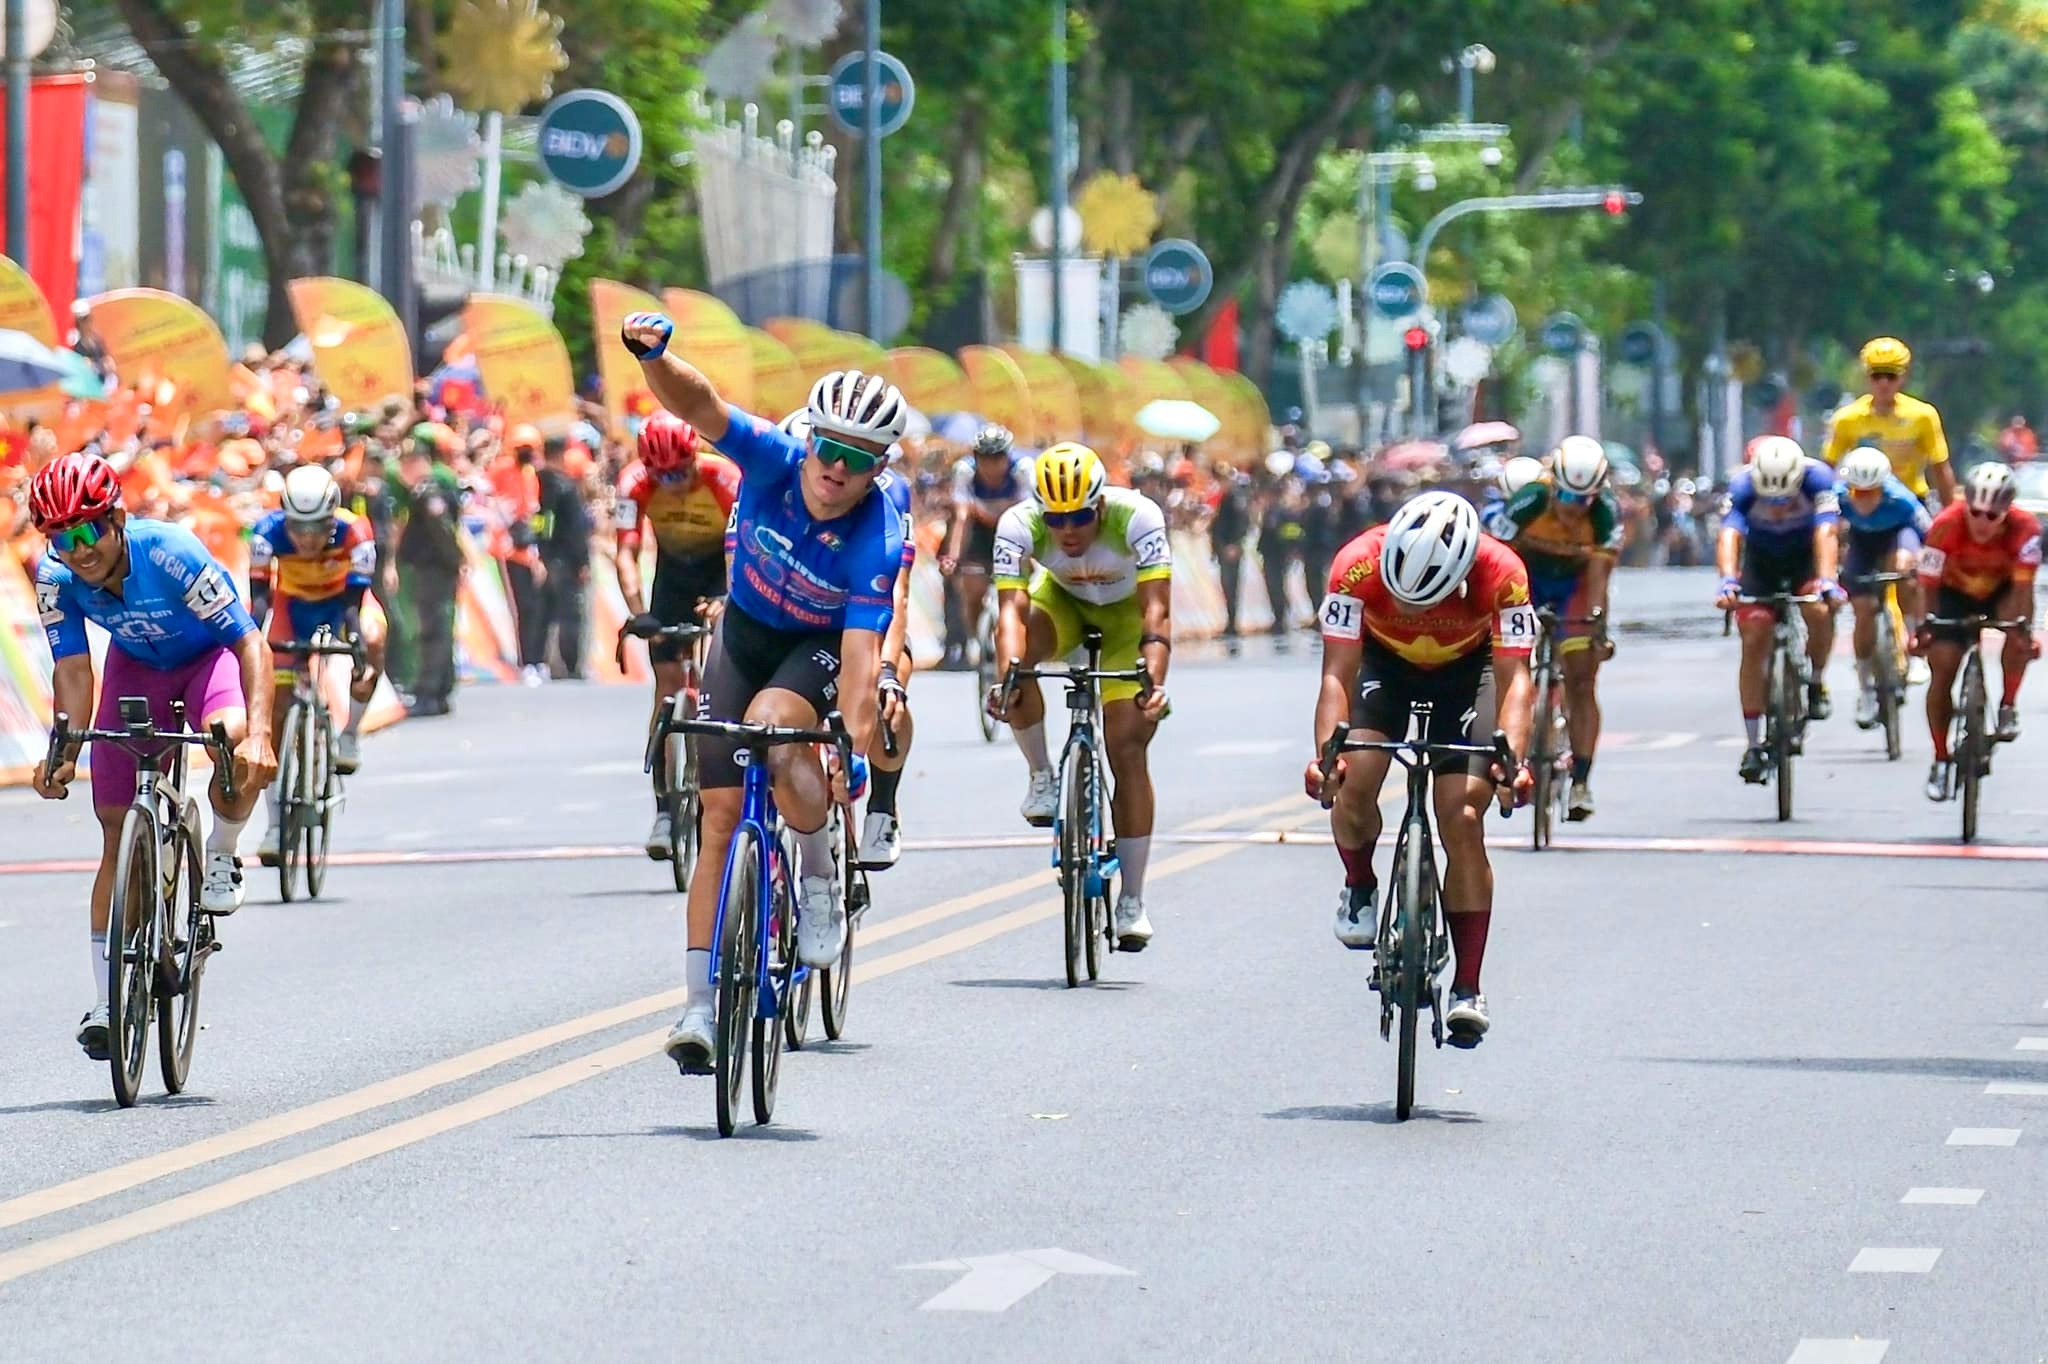 Tay đua Martin Laas (620 Châu Thới Vĩnh Long) chiến thắng chặng cuối của giải. Ảnh: Cycling News